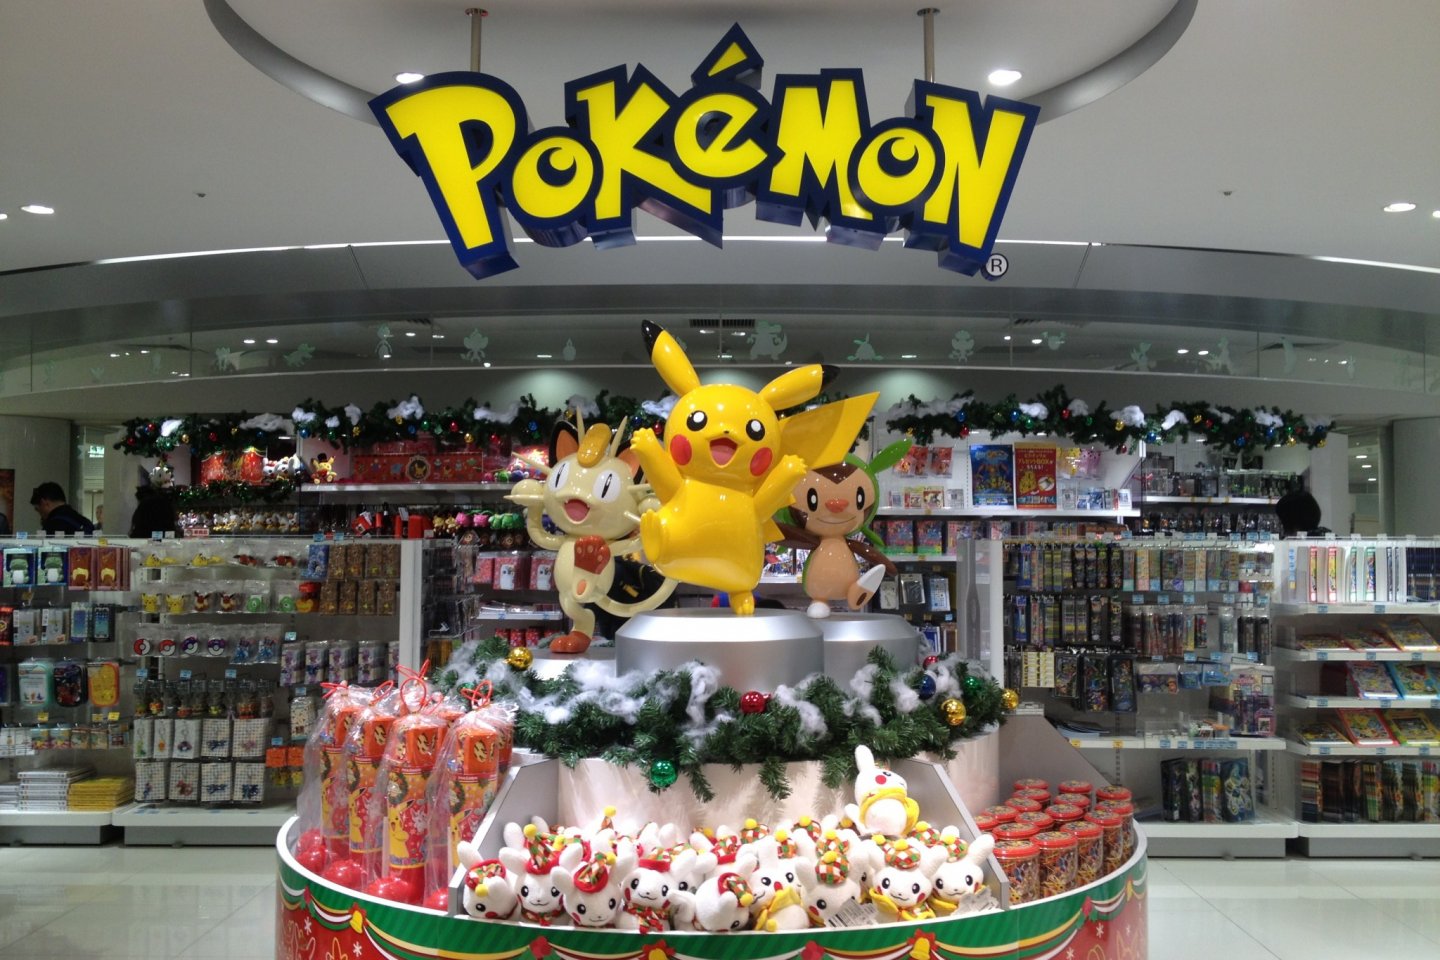 Selamat datang di Pusat Pokemon Osaka